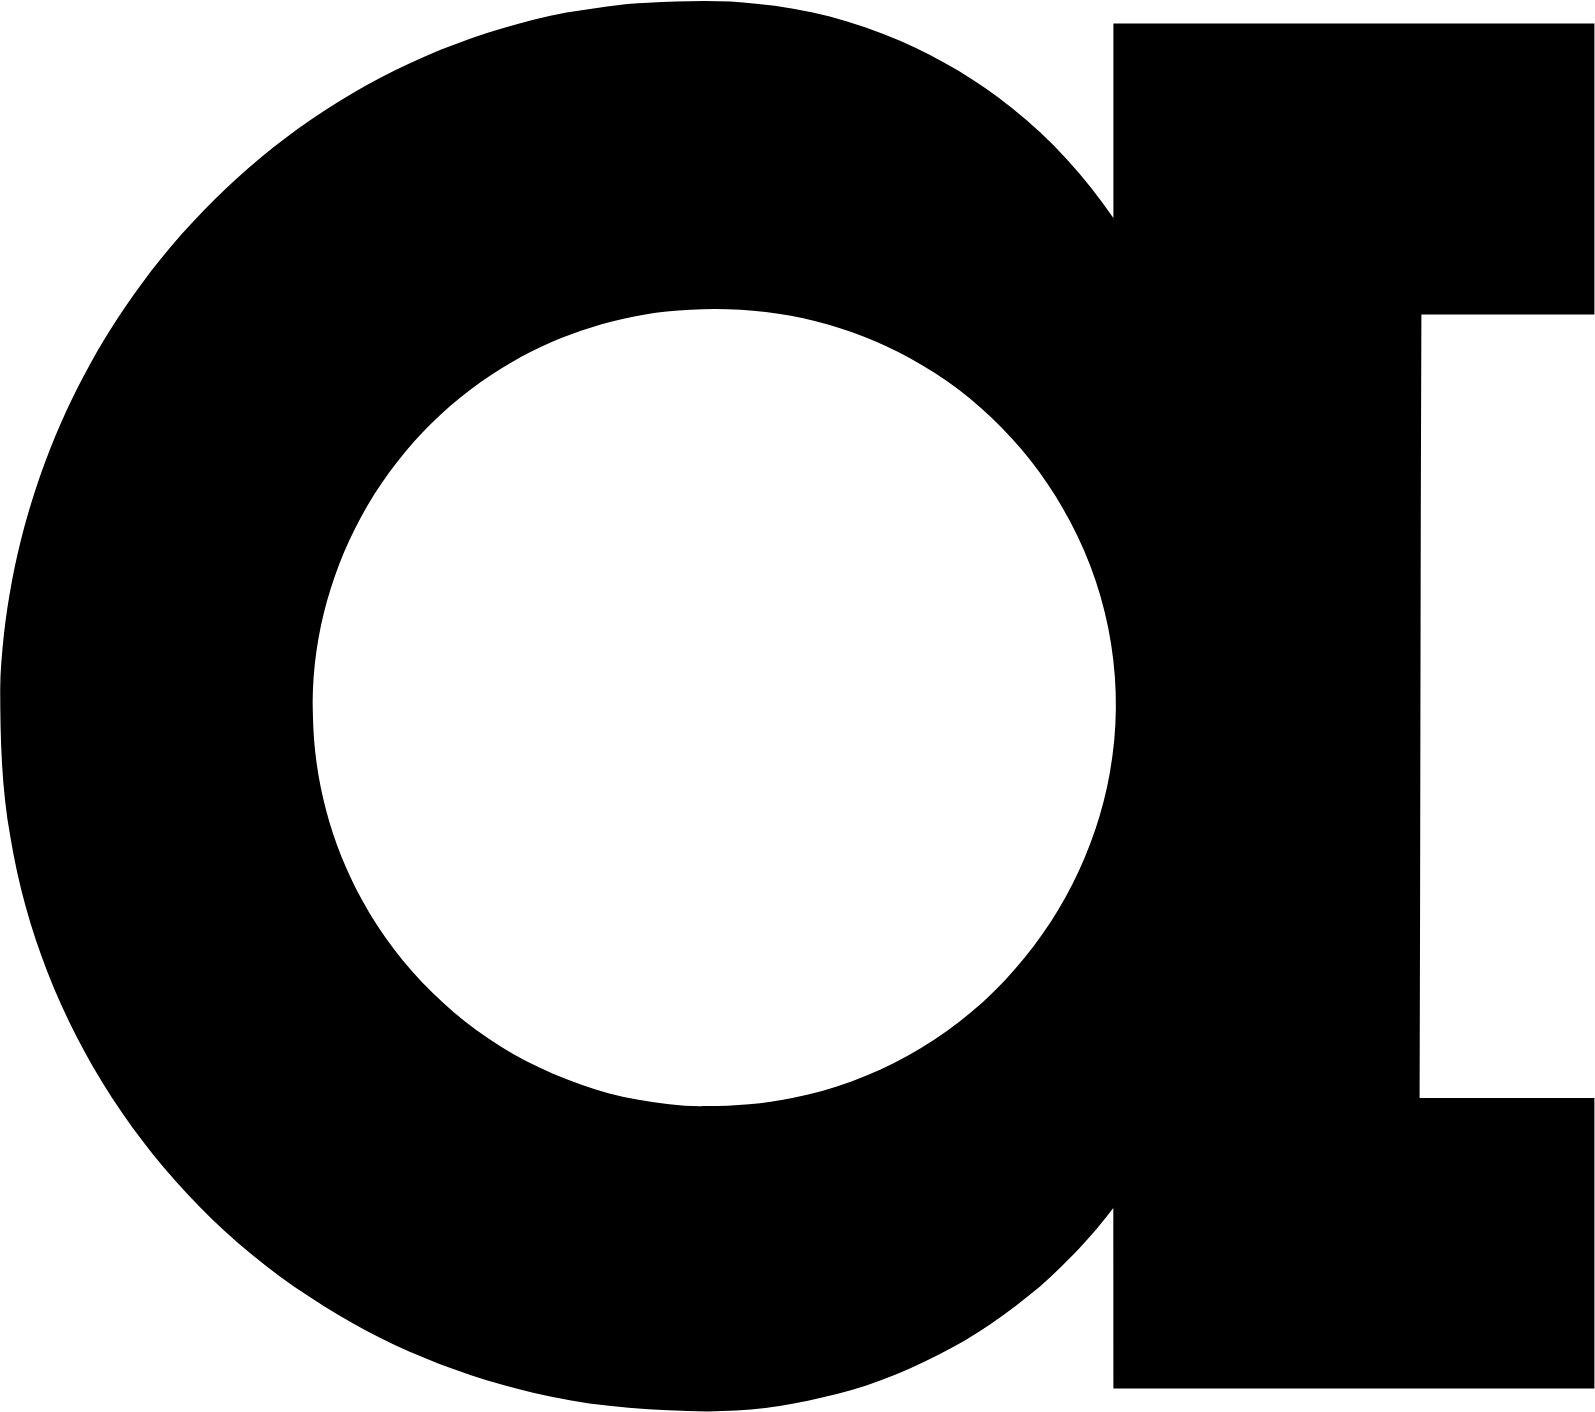 Abcam logo (transparent PNG)